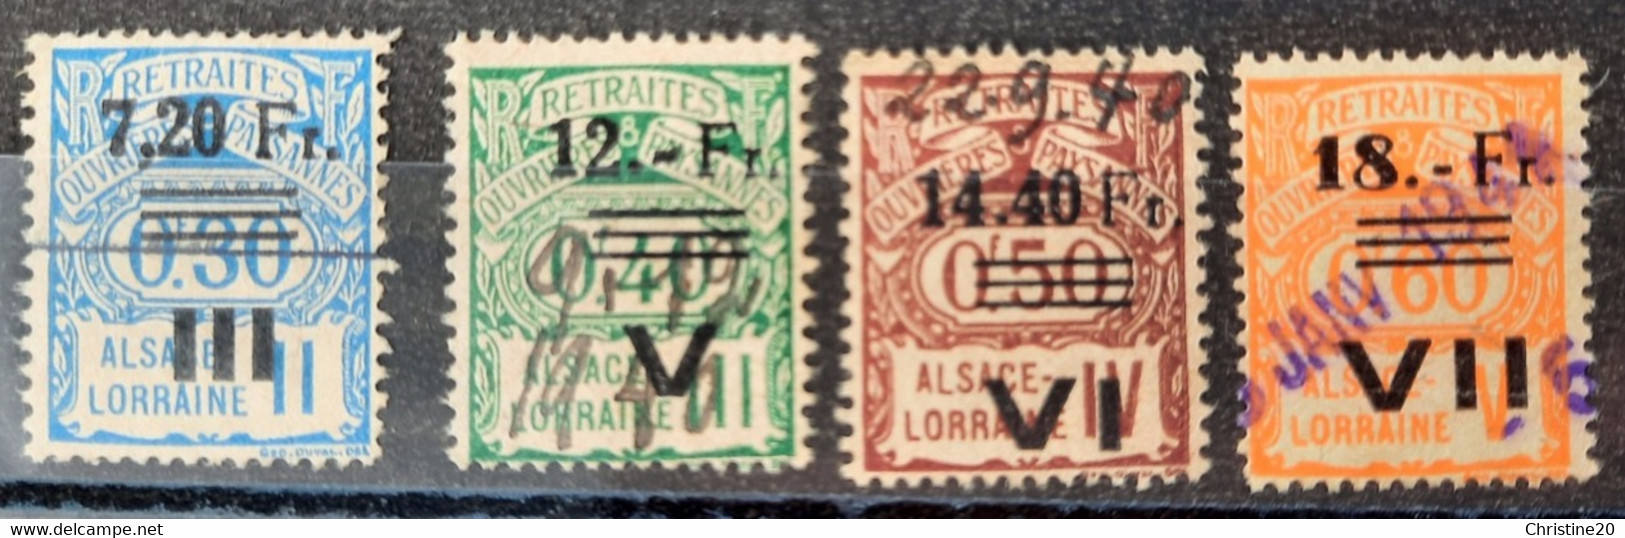 France 1940 Alsace-Lorraine N°163,165/67 Socio-postaux Occupation Allemande Régime De Transition Ob TB Cote 115€ - Used Stamps